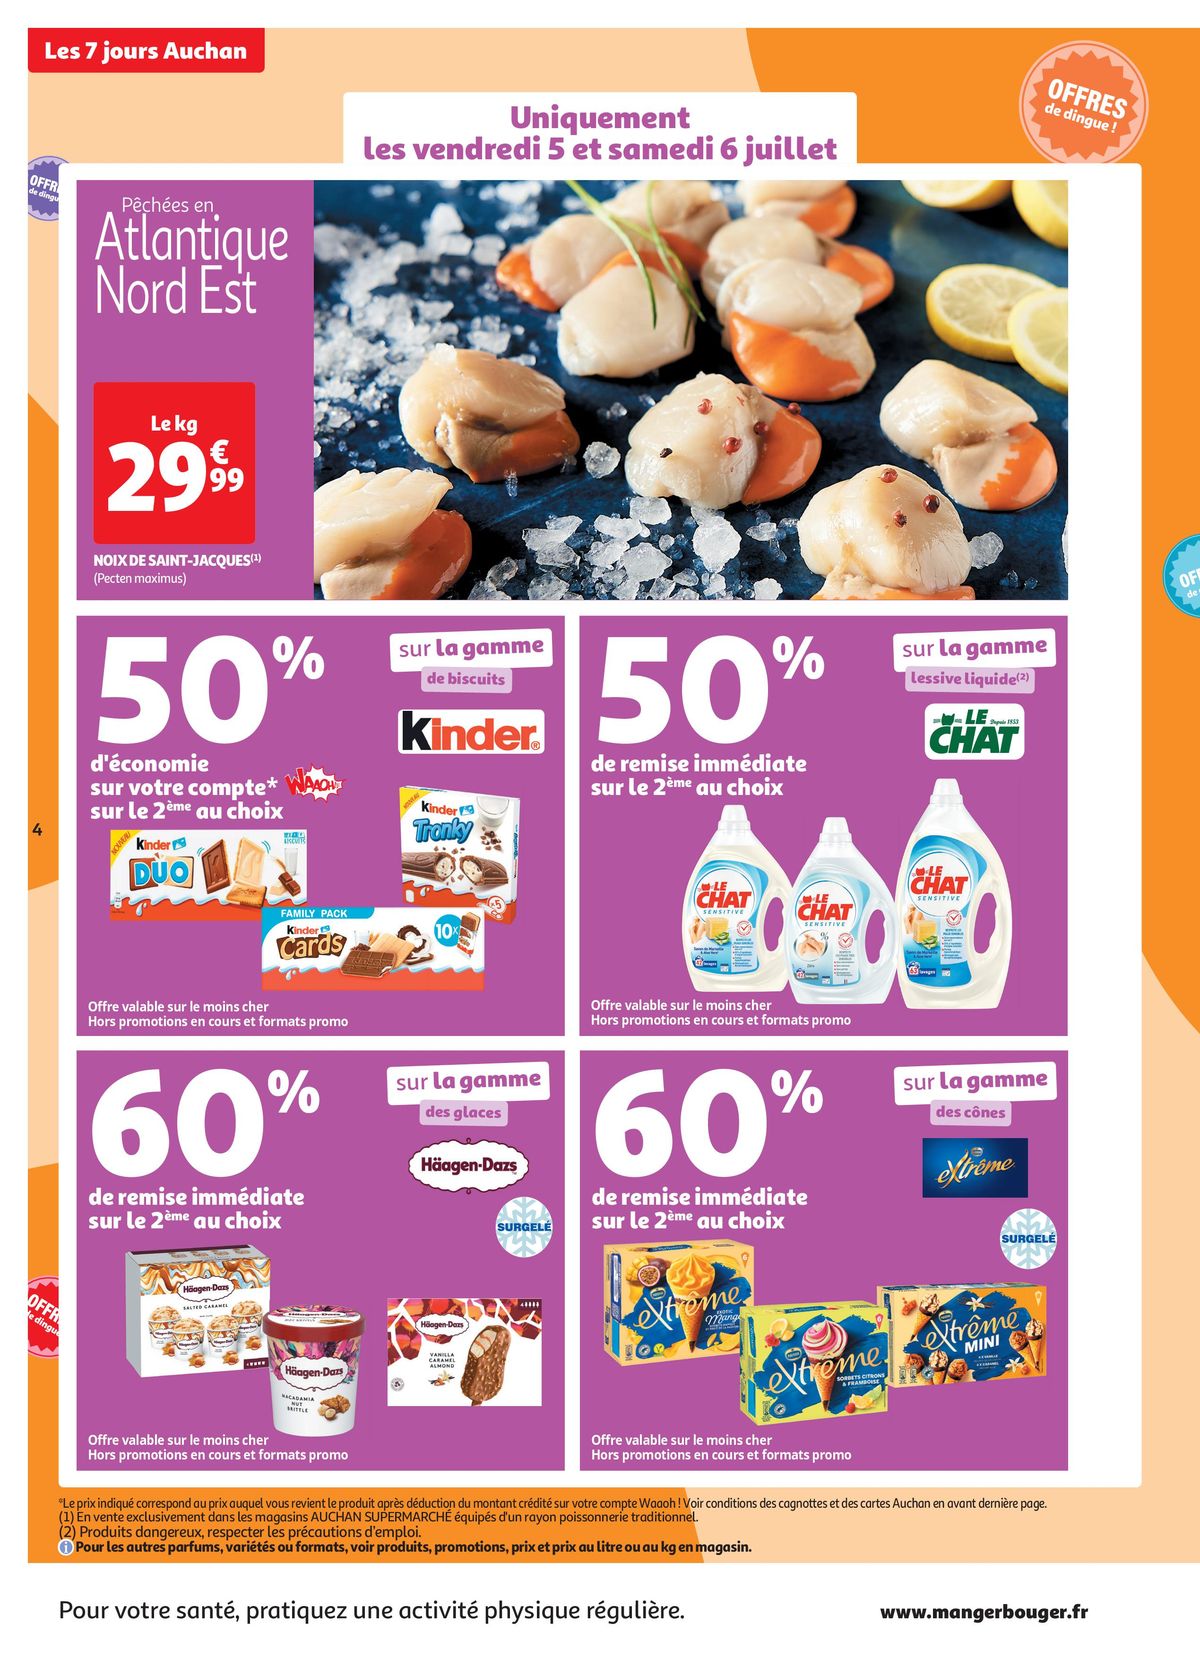 Catalogue C'est les 7 jours Auchan dans votre super !, page 00004